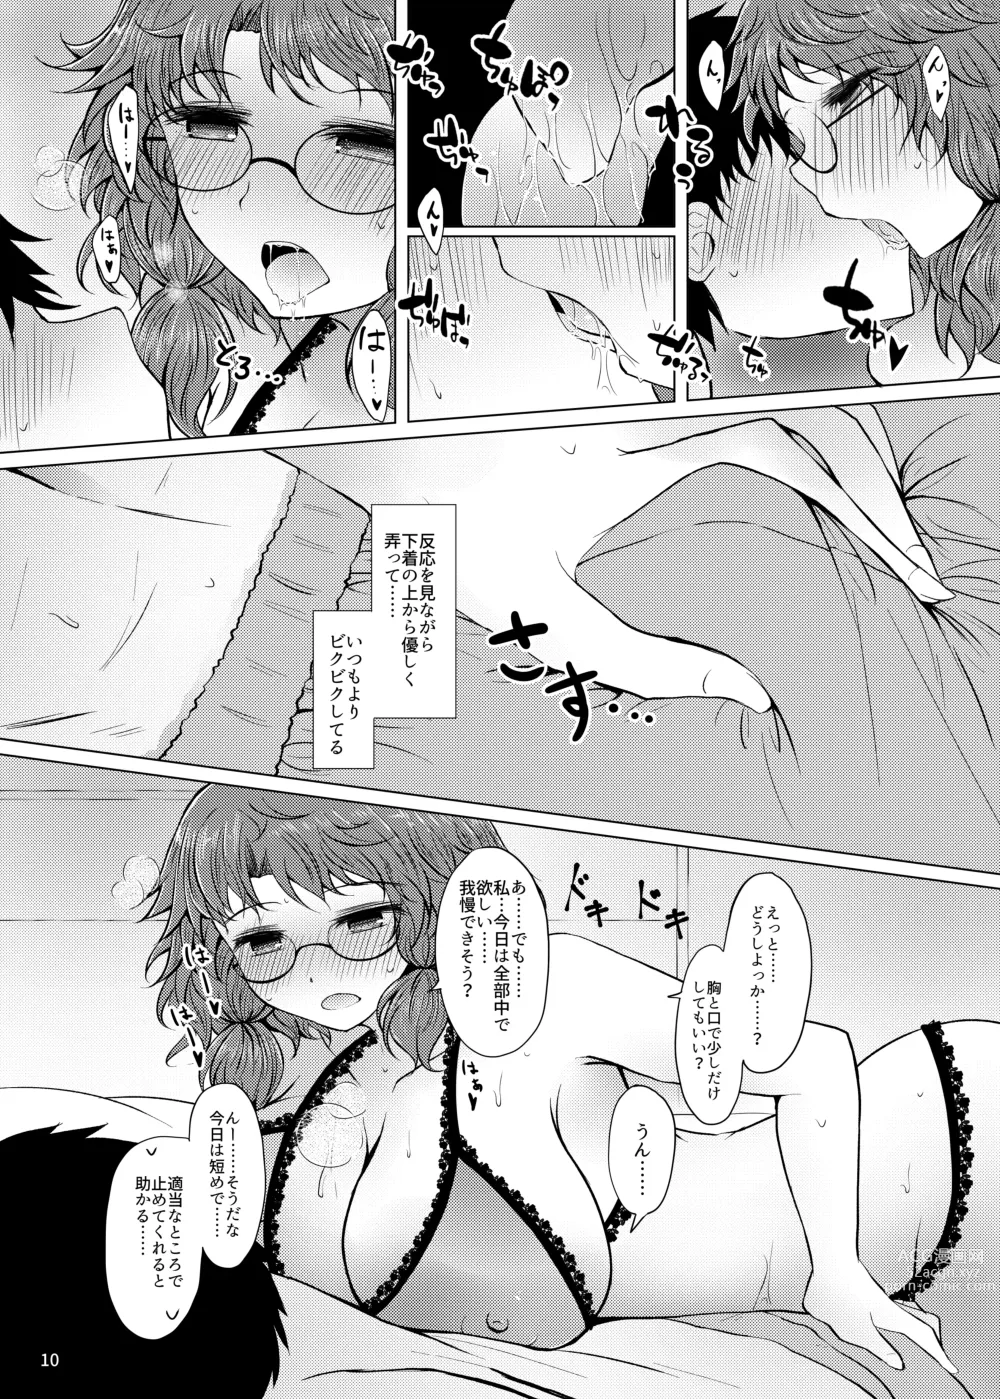 Page 9 of doujinshi Shinkon Sumireko